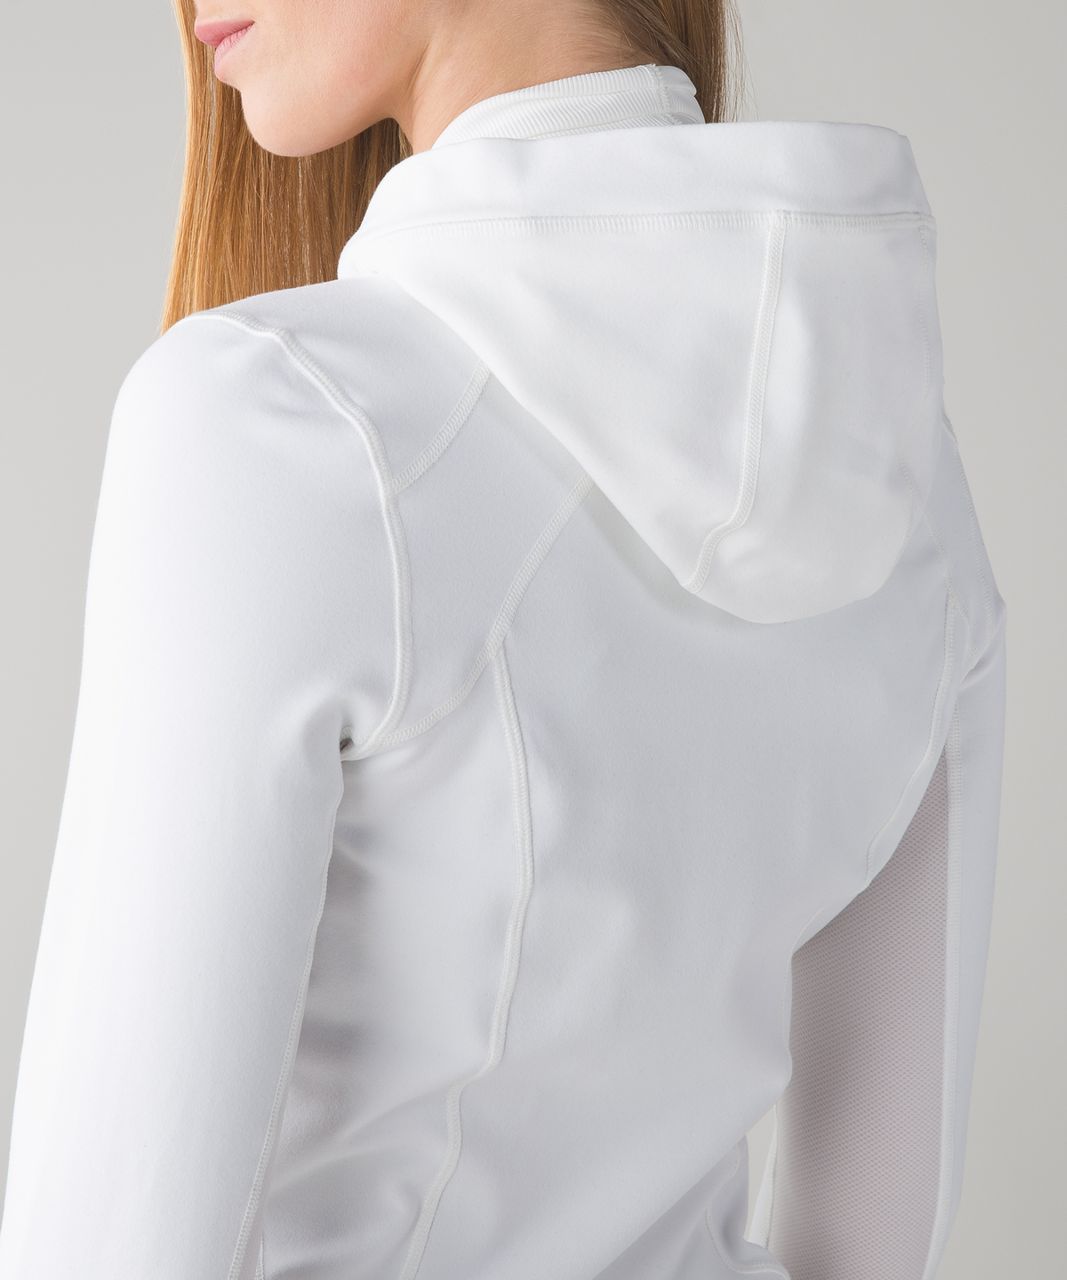 Lululemon Daily Practice Jacket - White